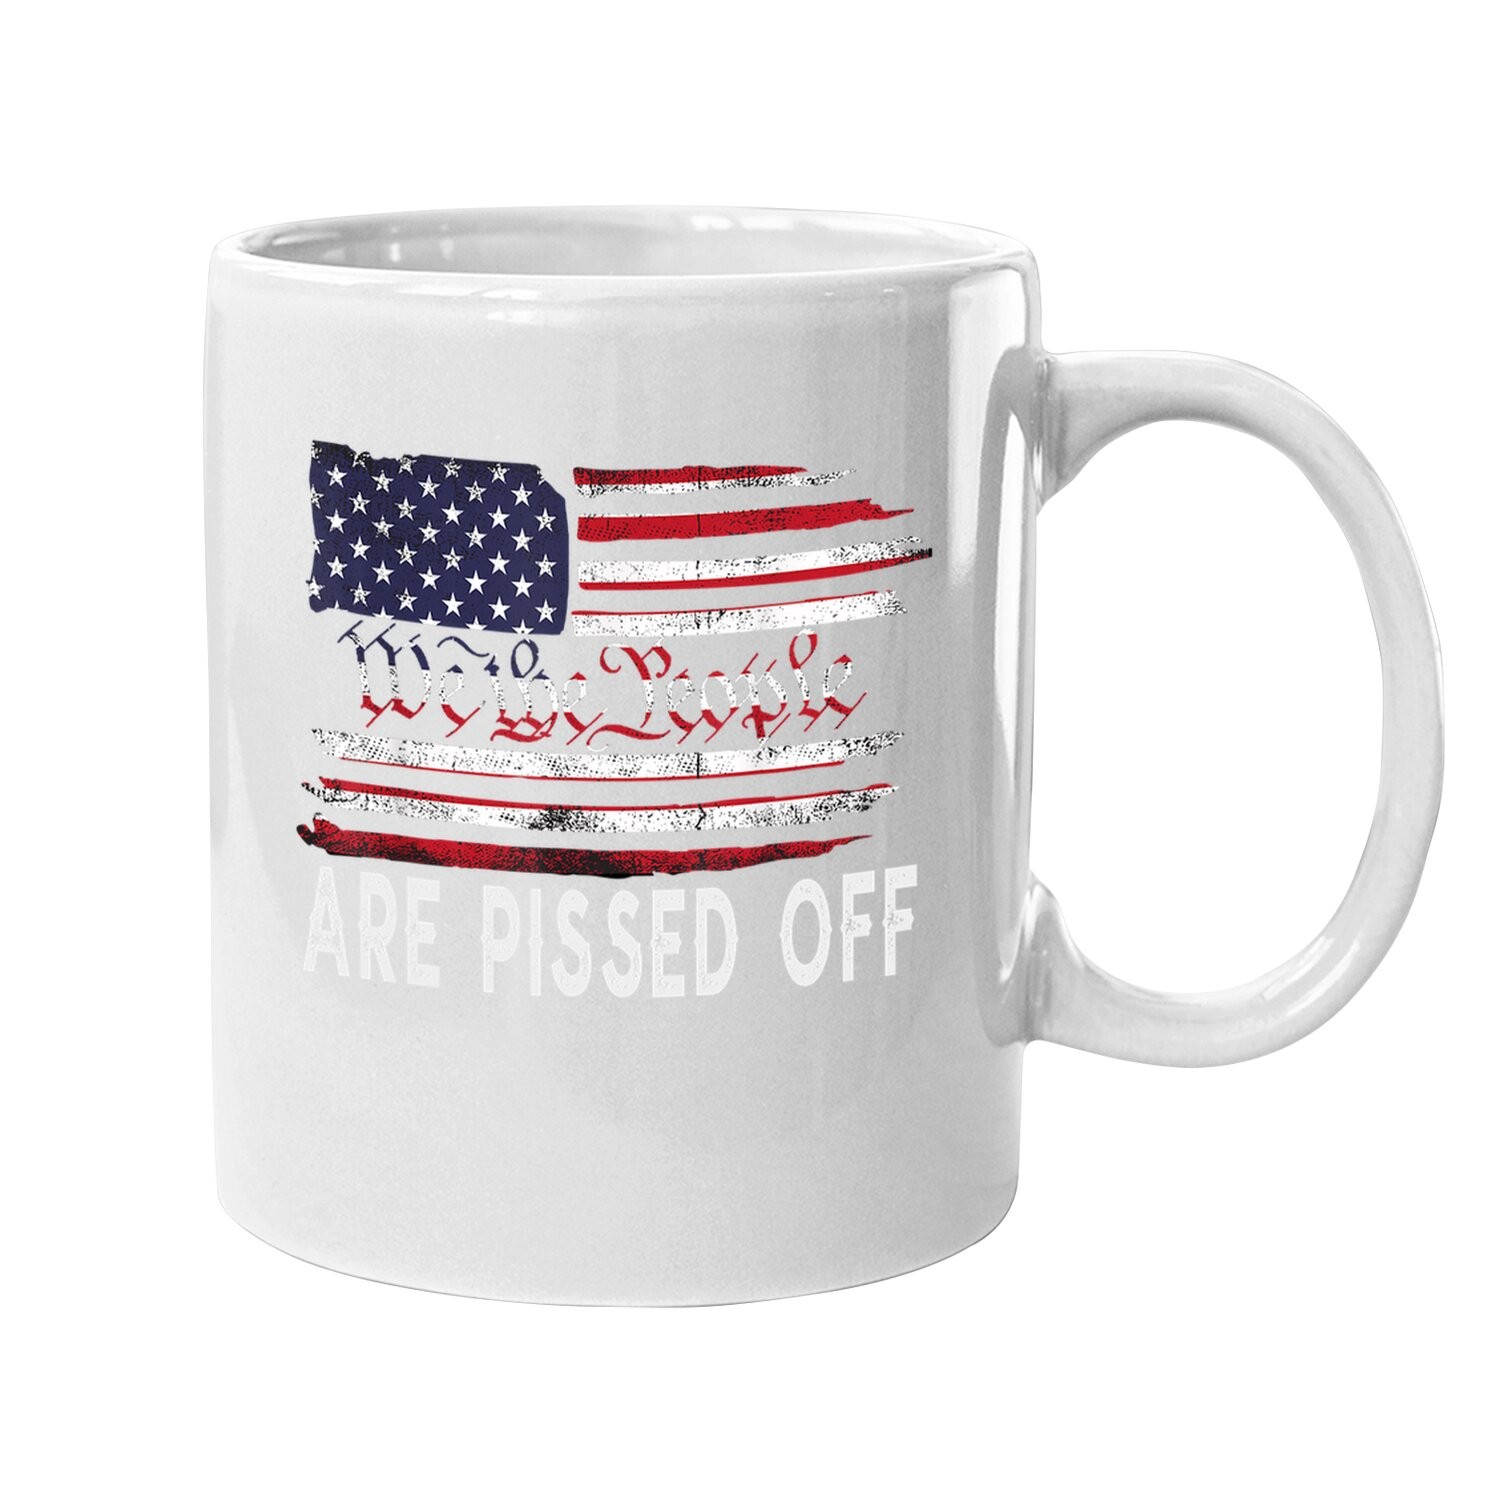 We The People Are Pissed Off Vintage Us America Flag Coffee Mug